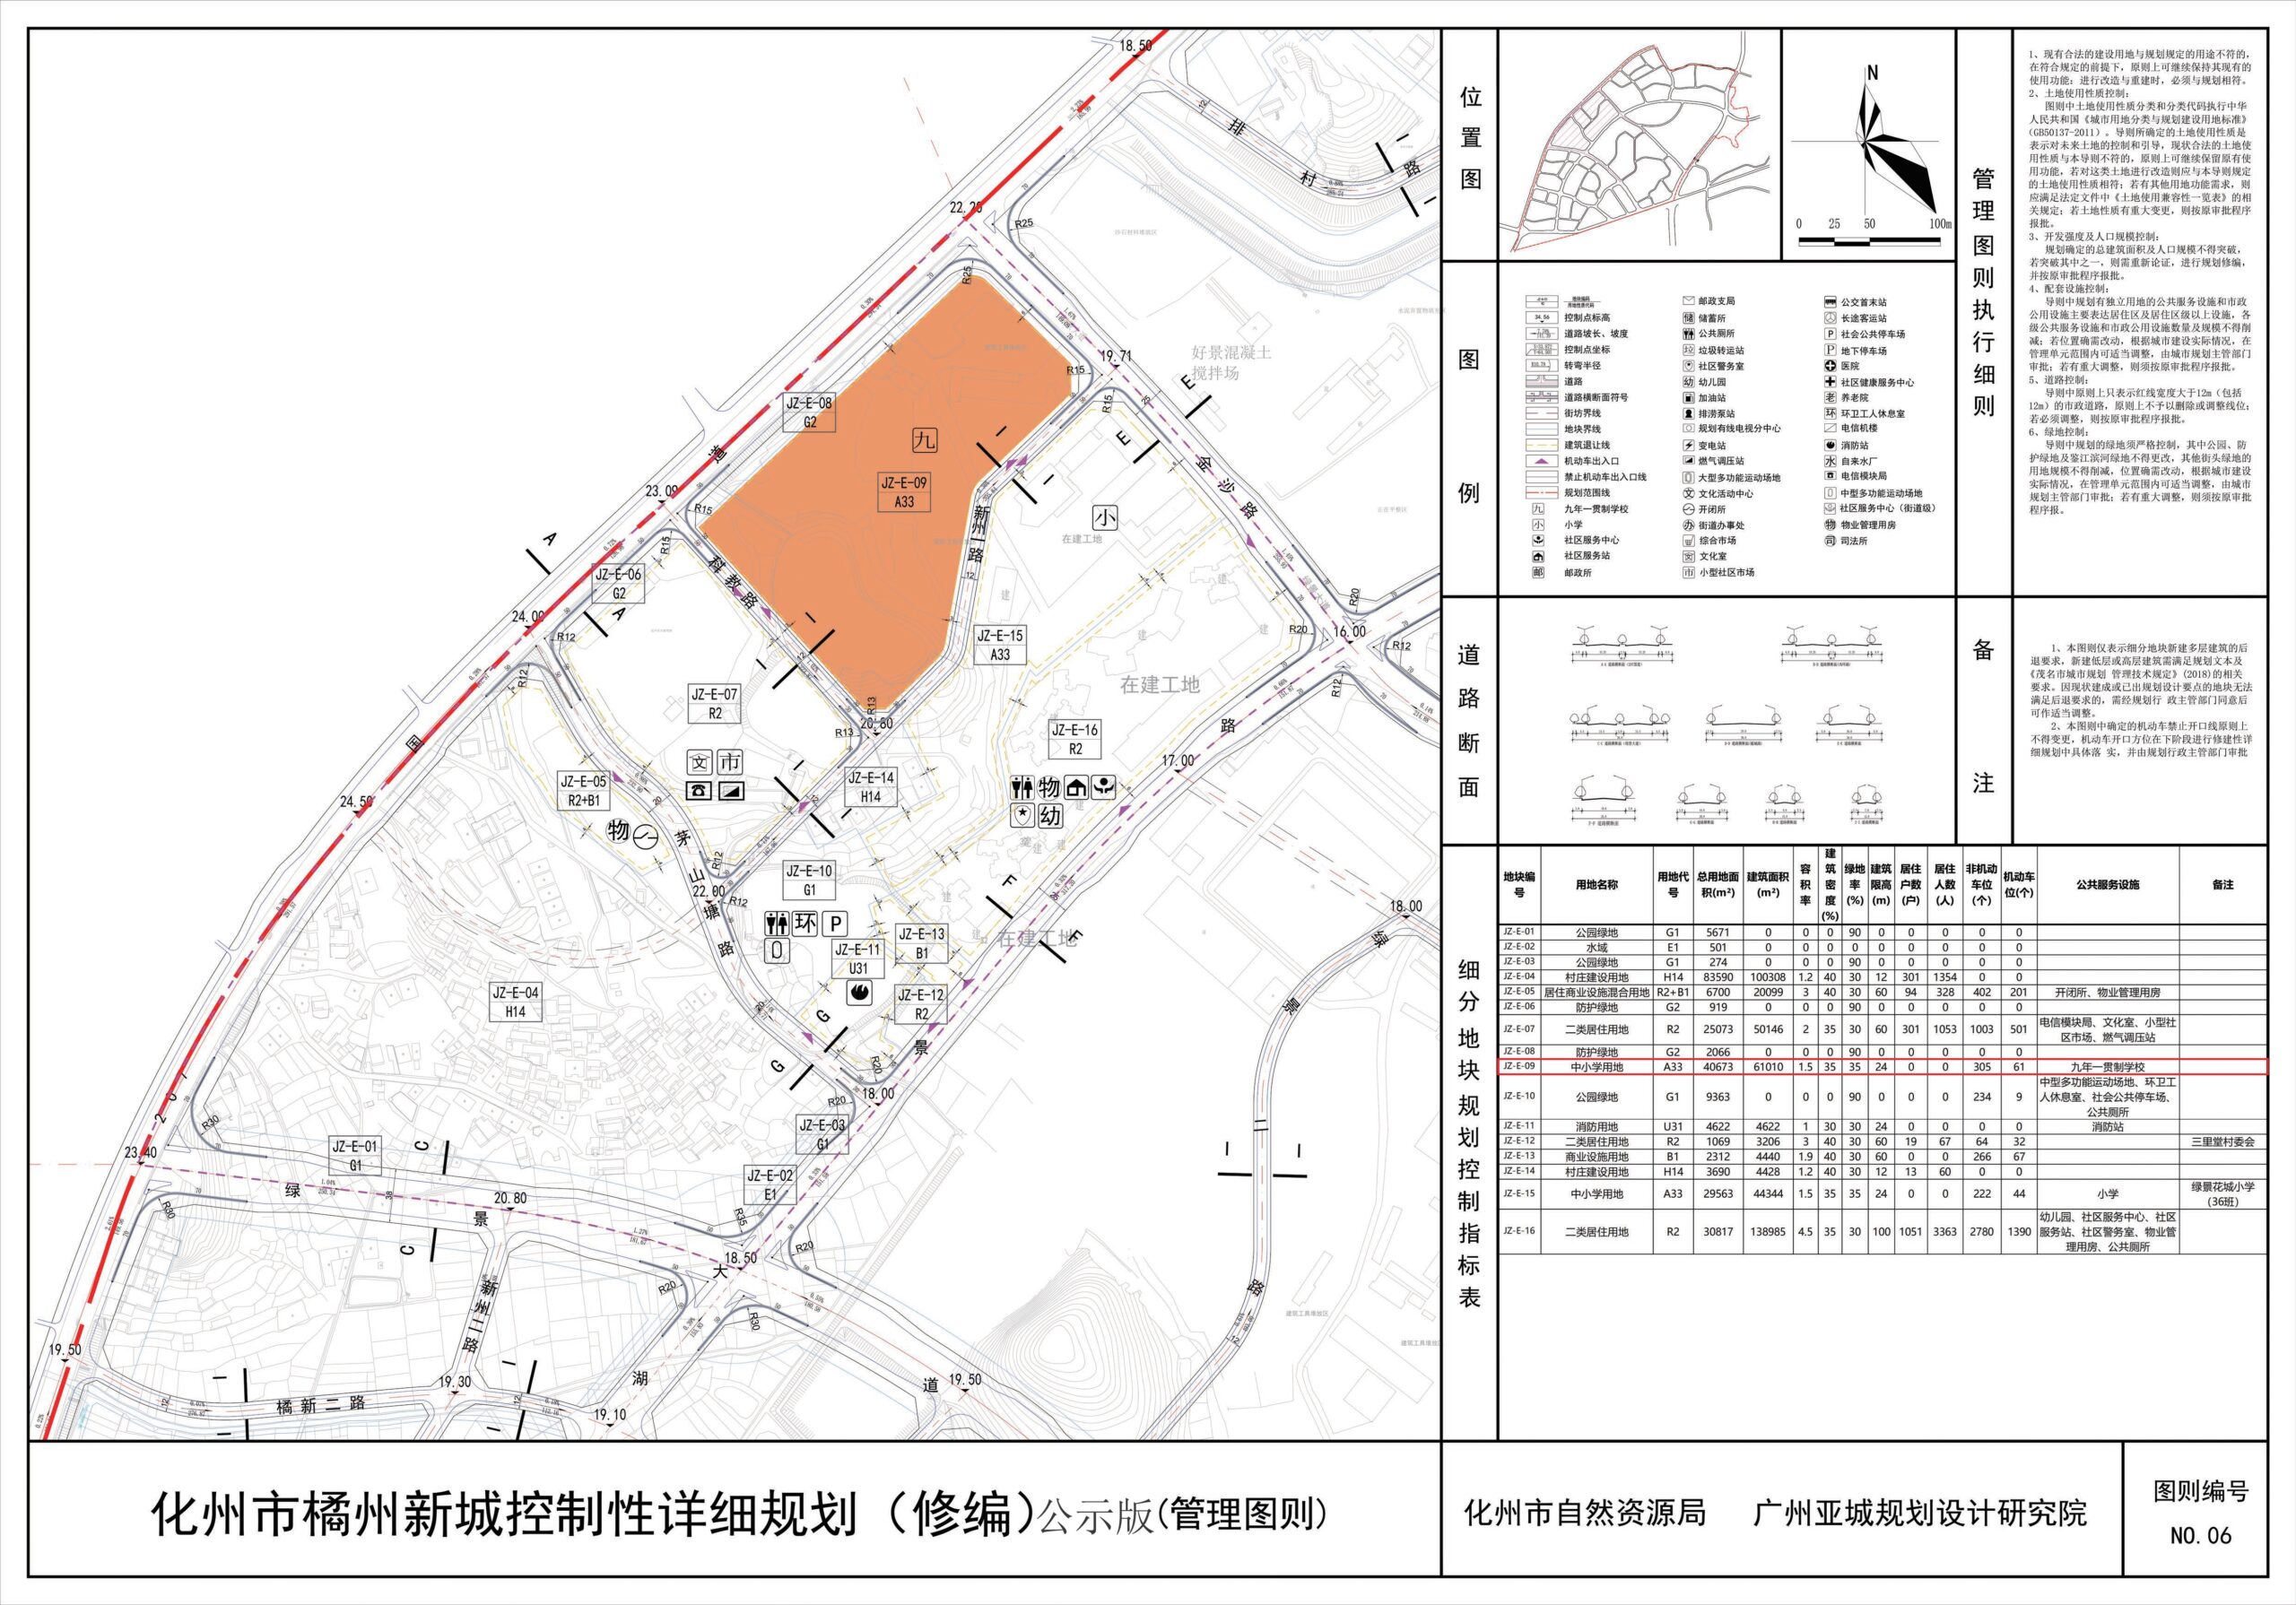 化州市绿景国际花城绿景花城小学二期修建性详细规划与设计方案批前公示 2